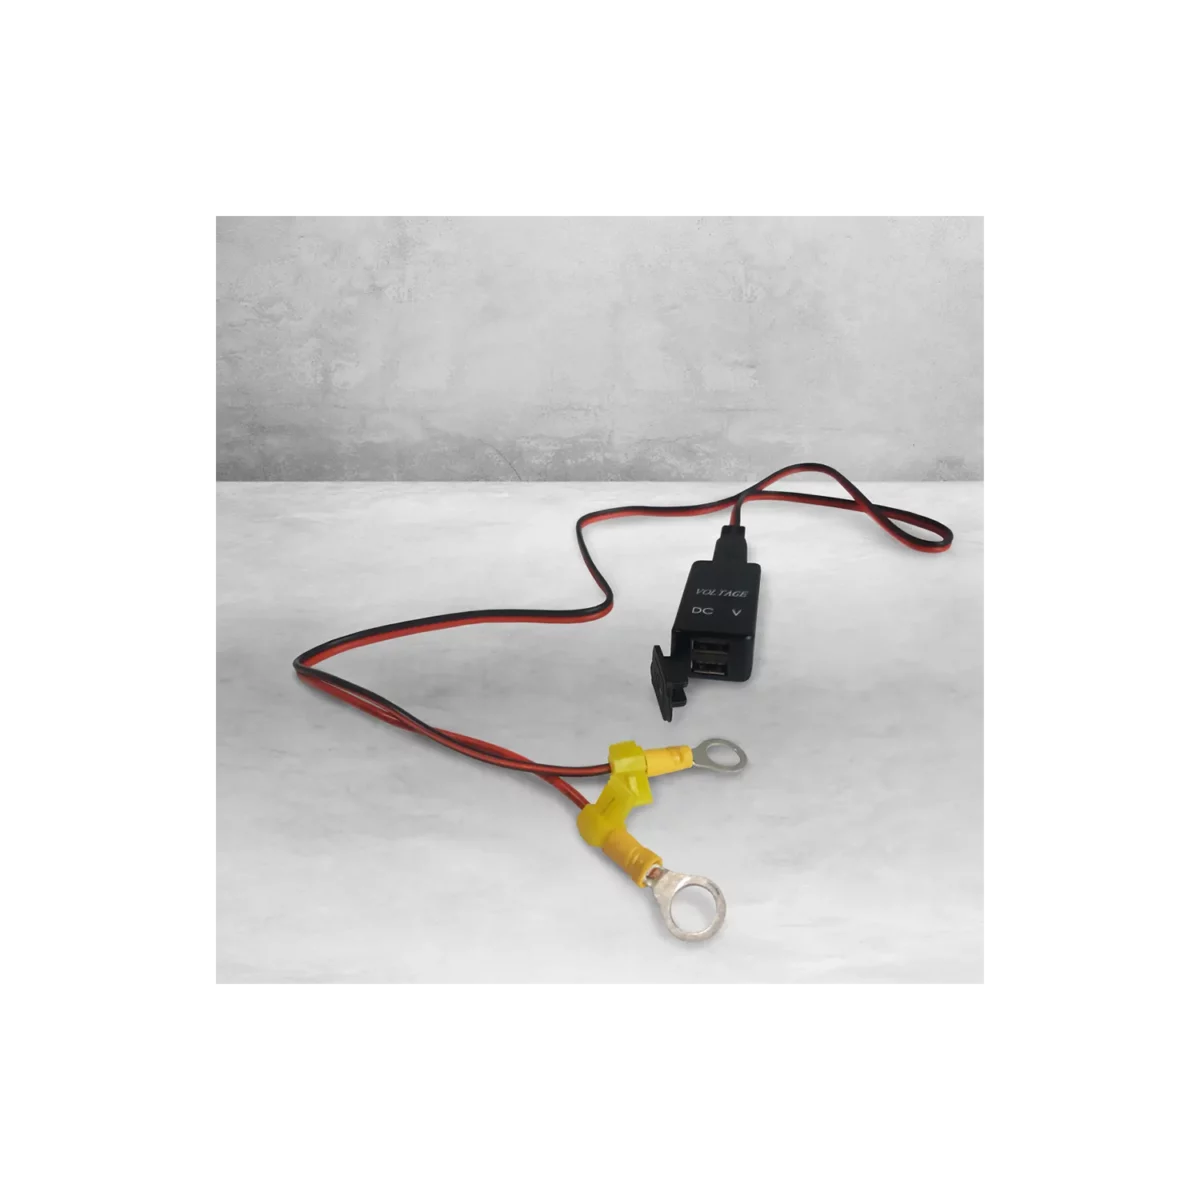 dakota lithium USB PHONE CHARGER, VOLTMETER, & TERMINAL ADAPTER WIRING KIT